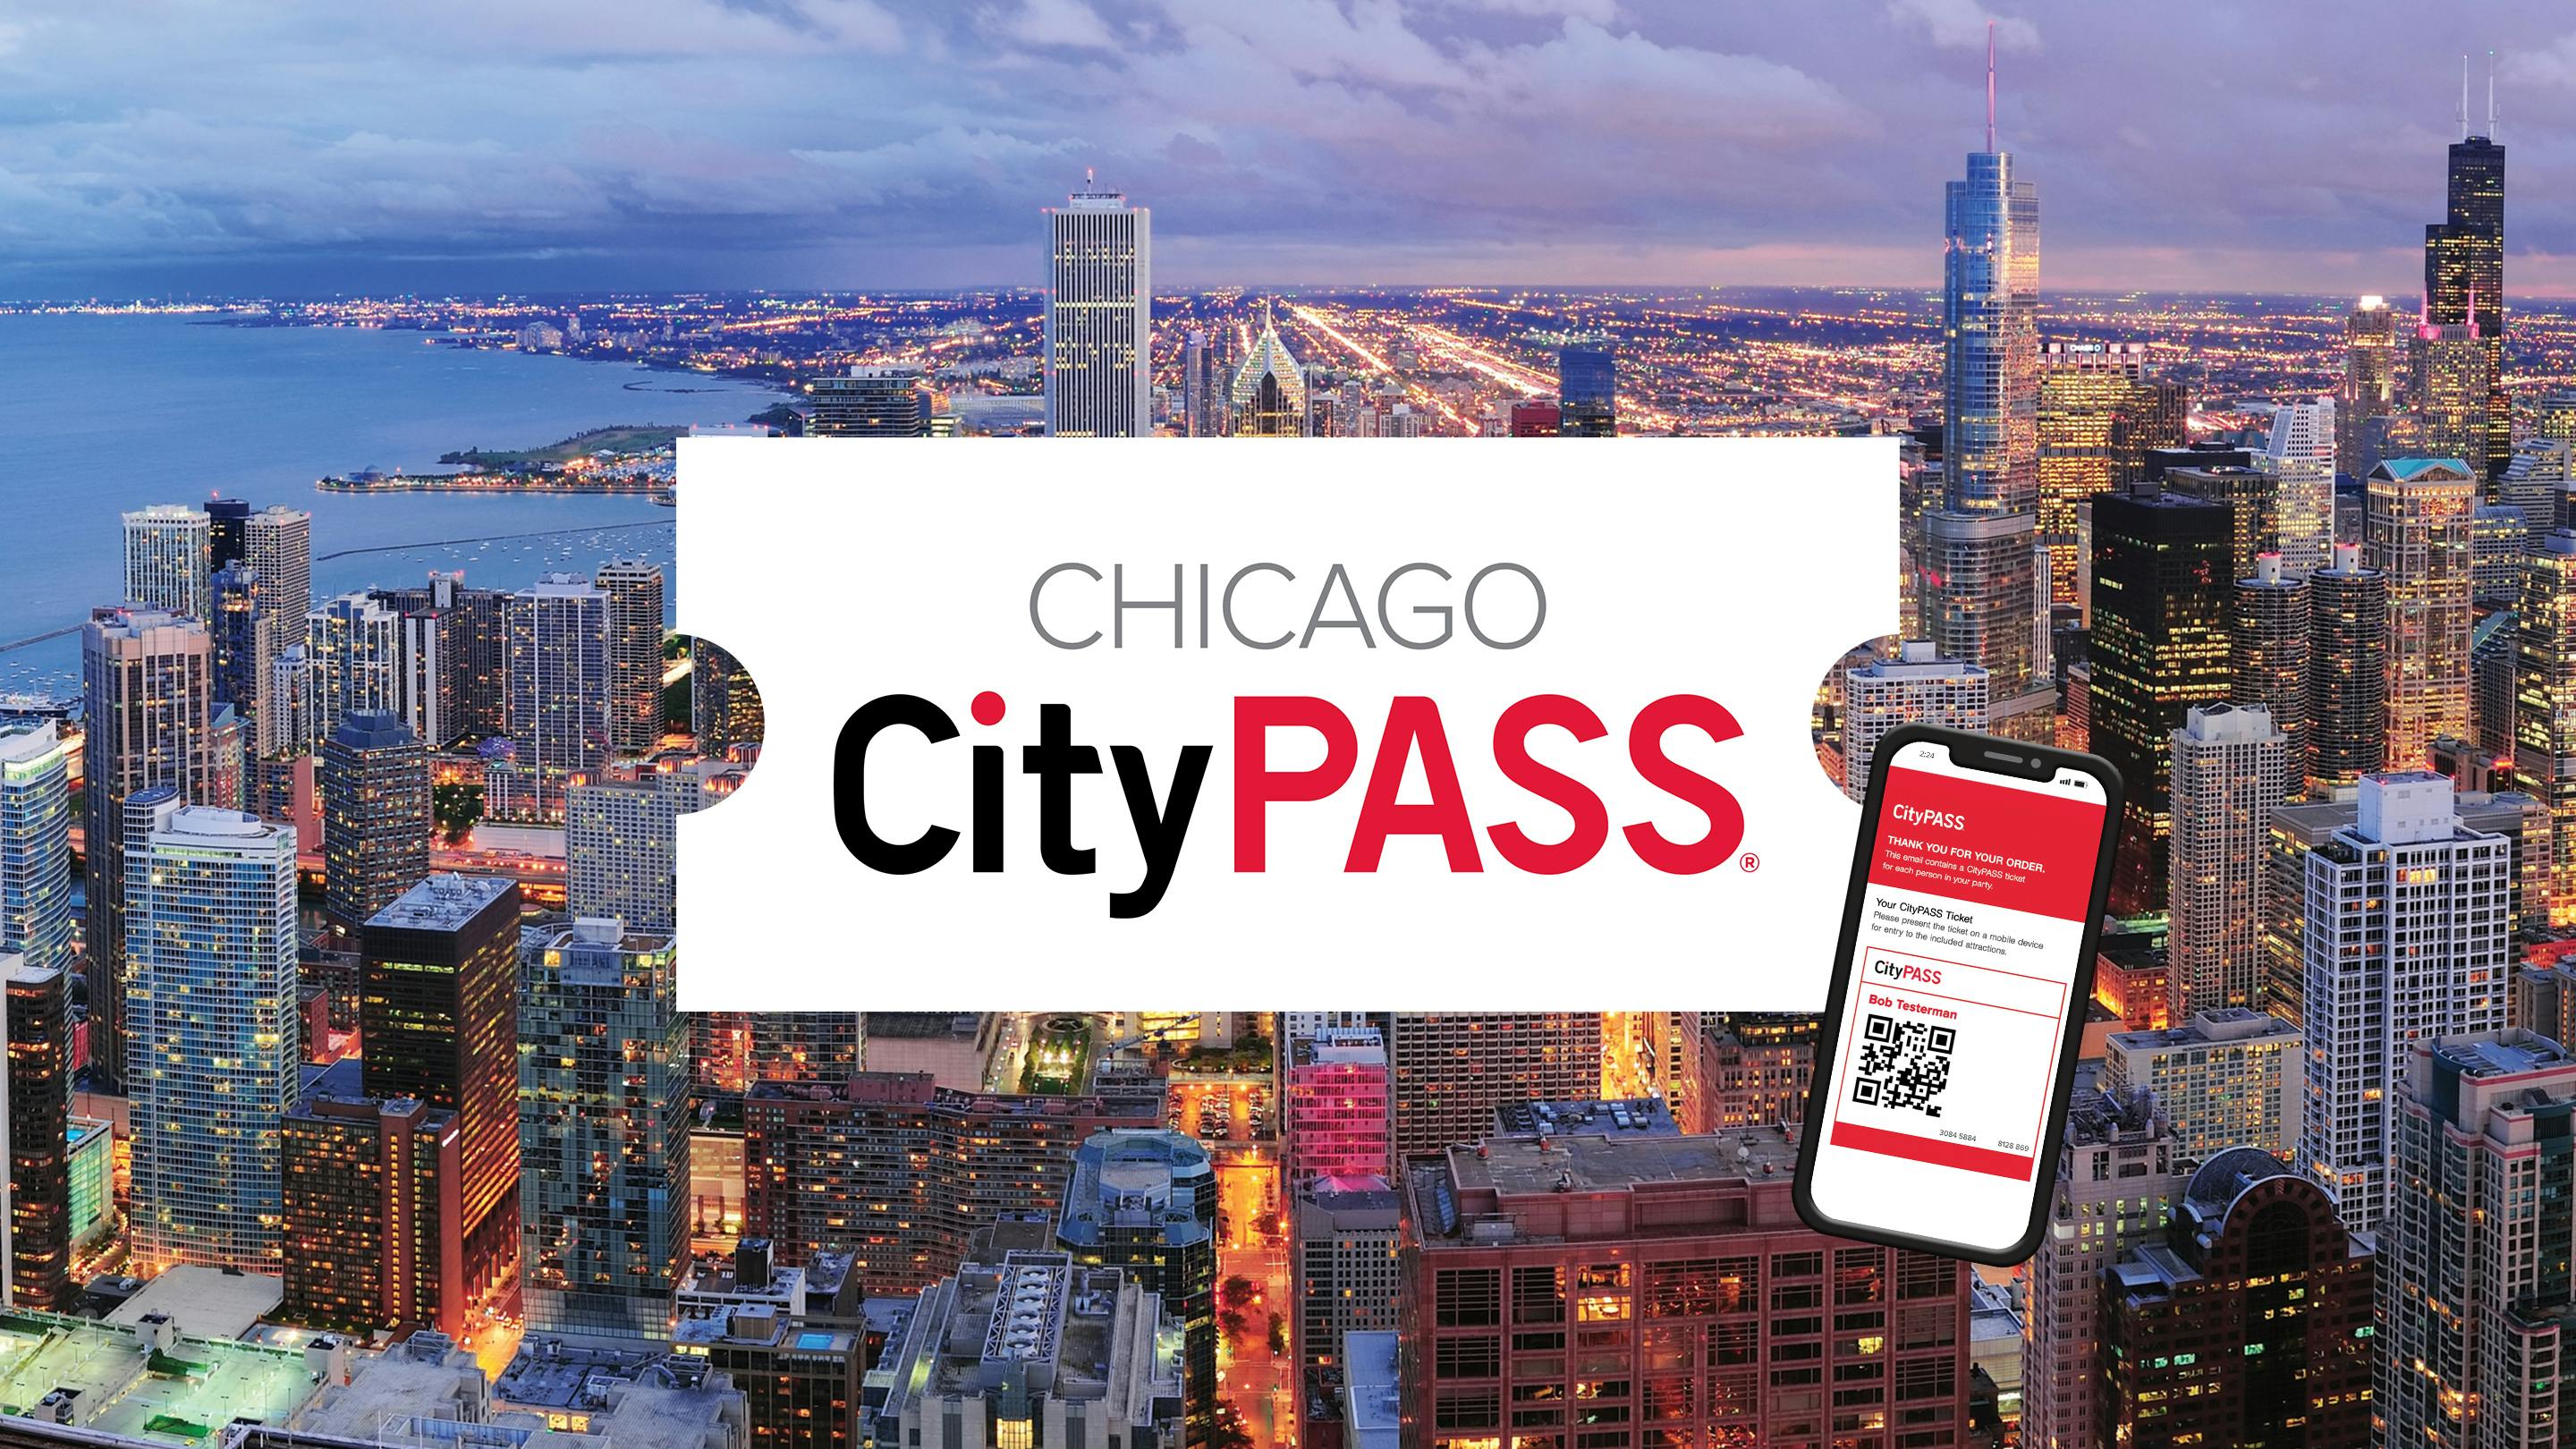 Chicago CityPASS Musement